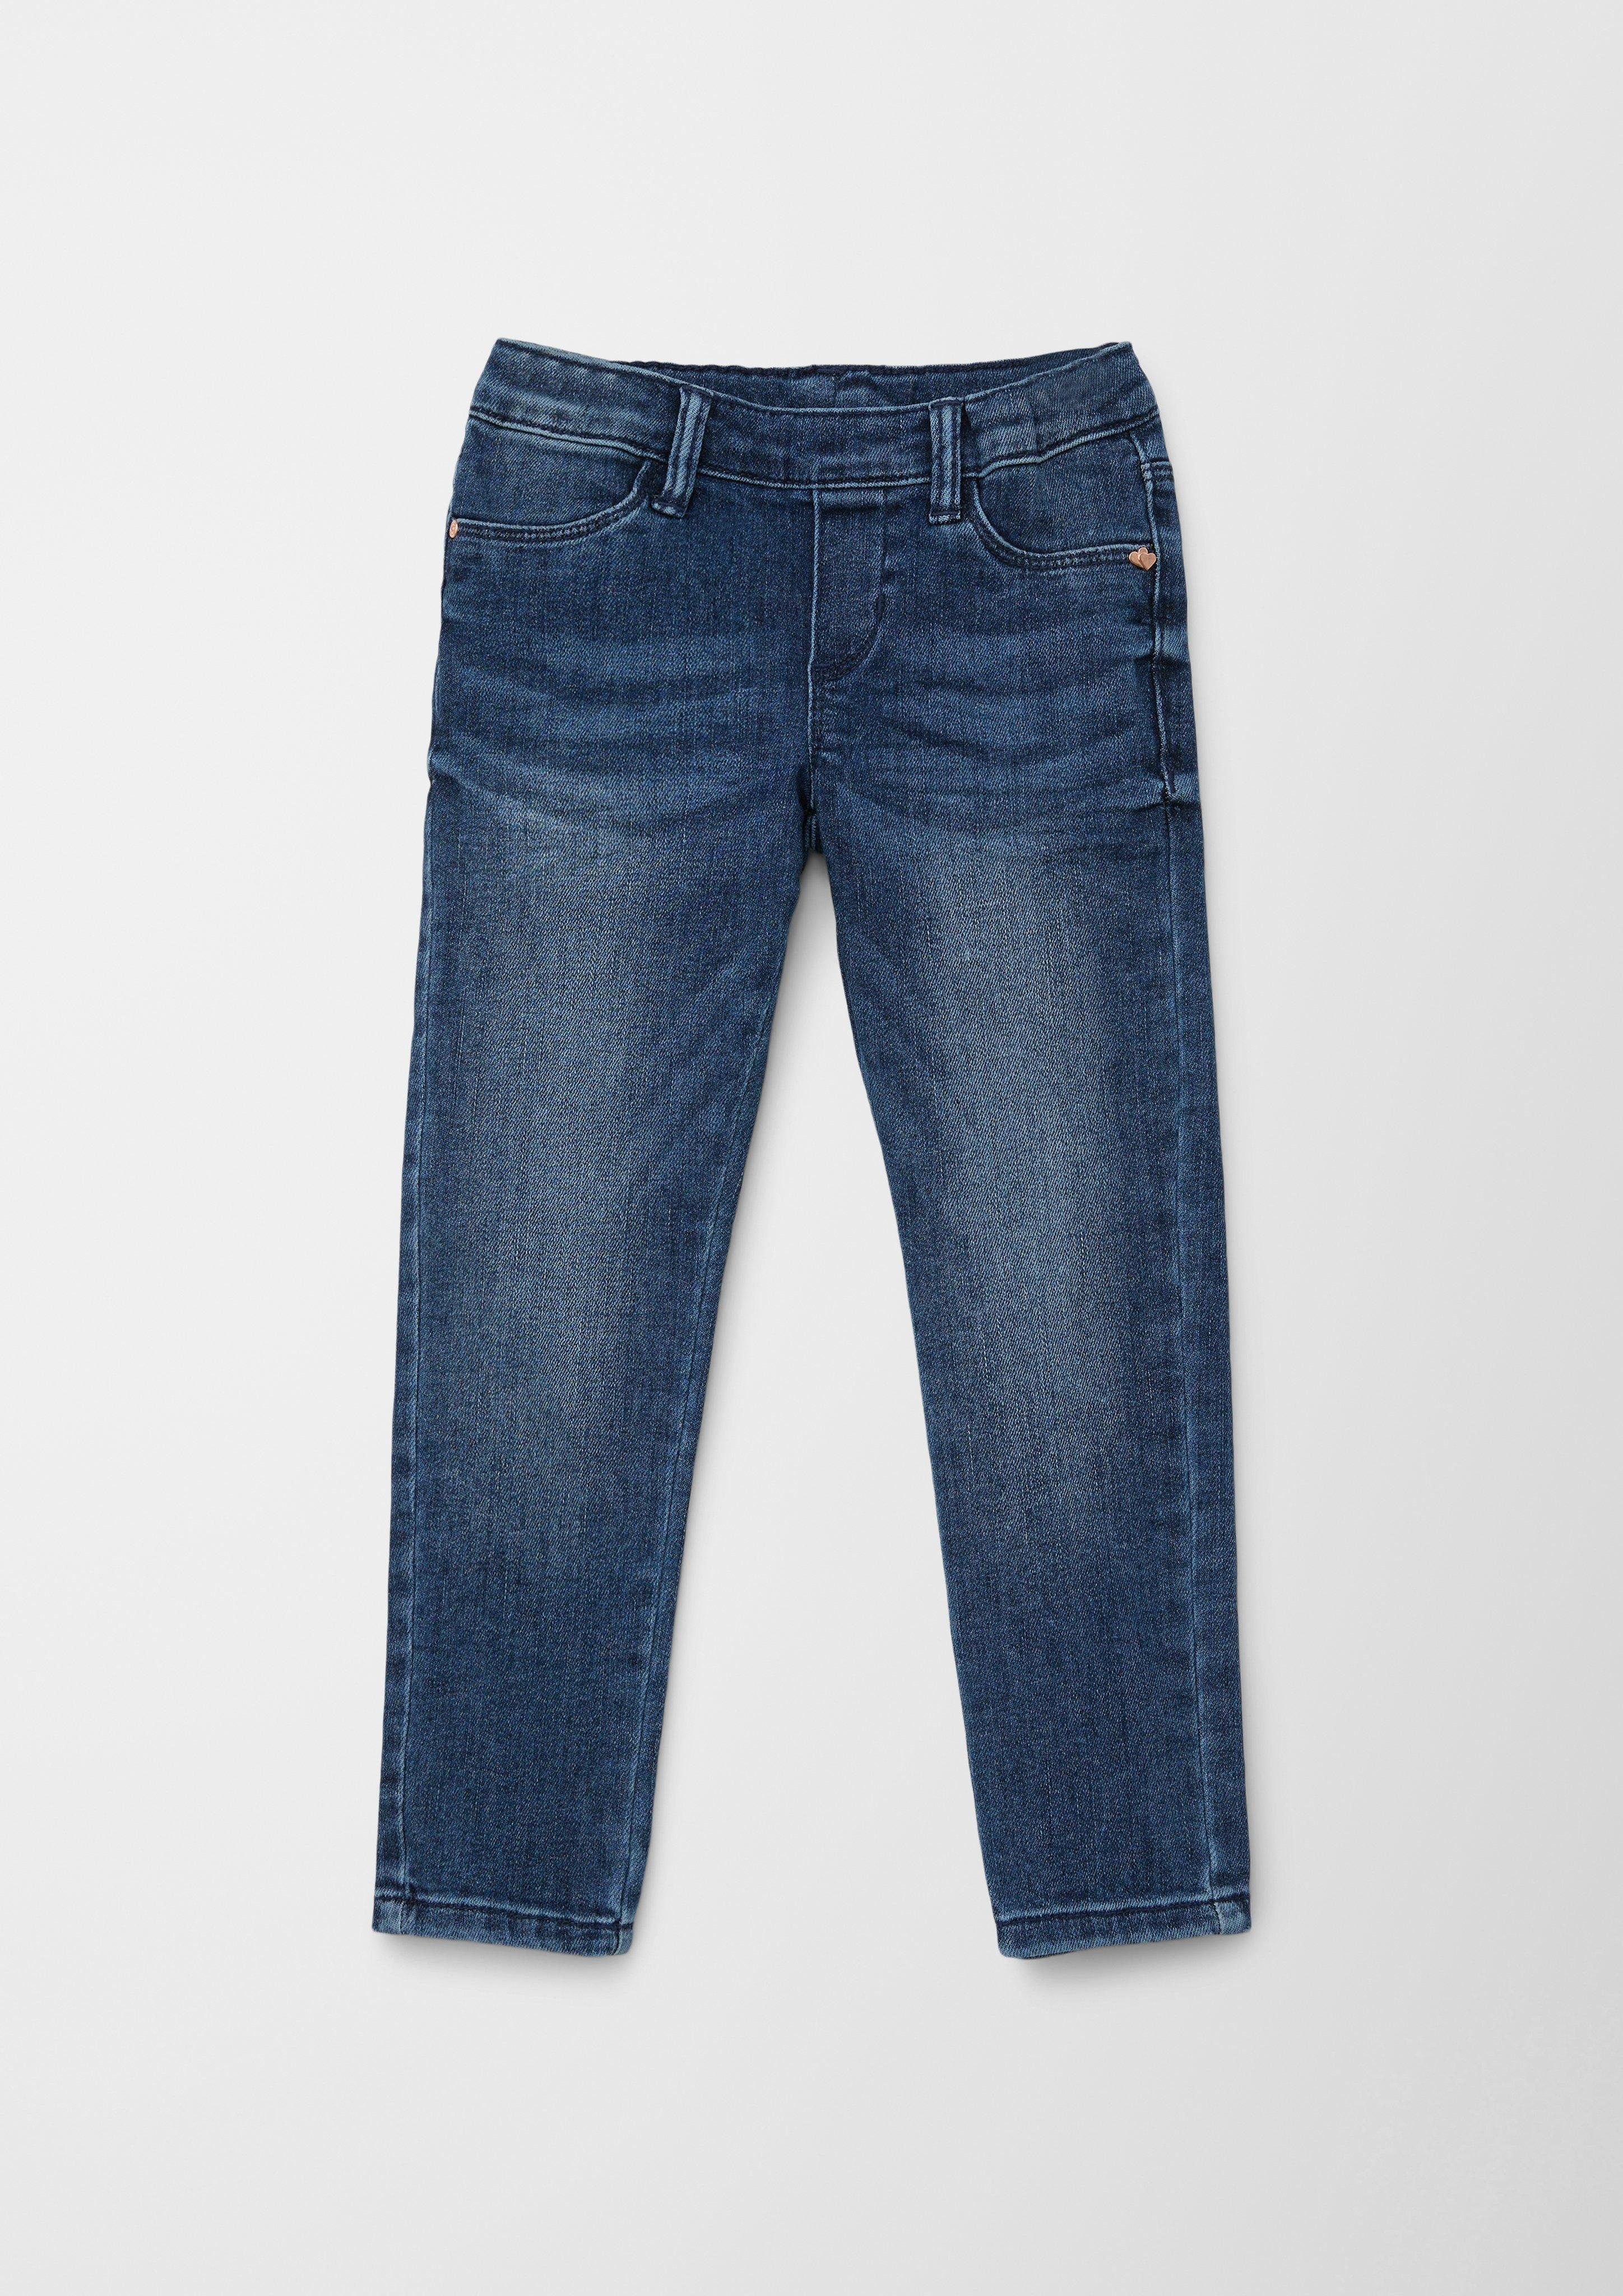 / Stoffhose Junior / Slim s.Oliver Leg Fit Treggings Elastikbund Jeans s.Oliver Mid / / Slim Waschung Rise